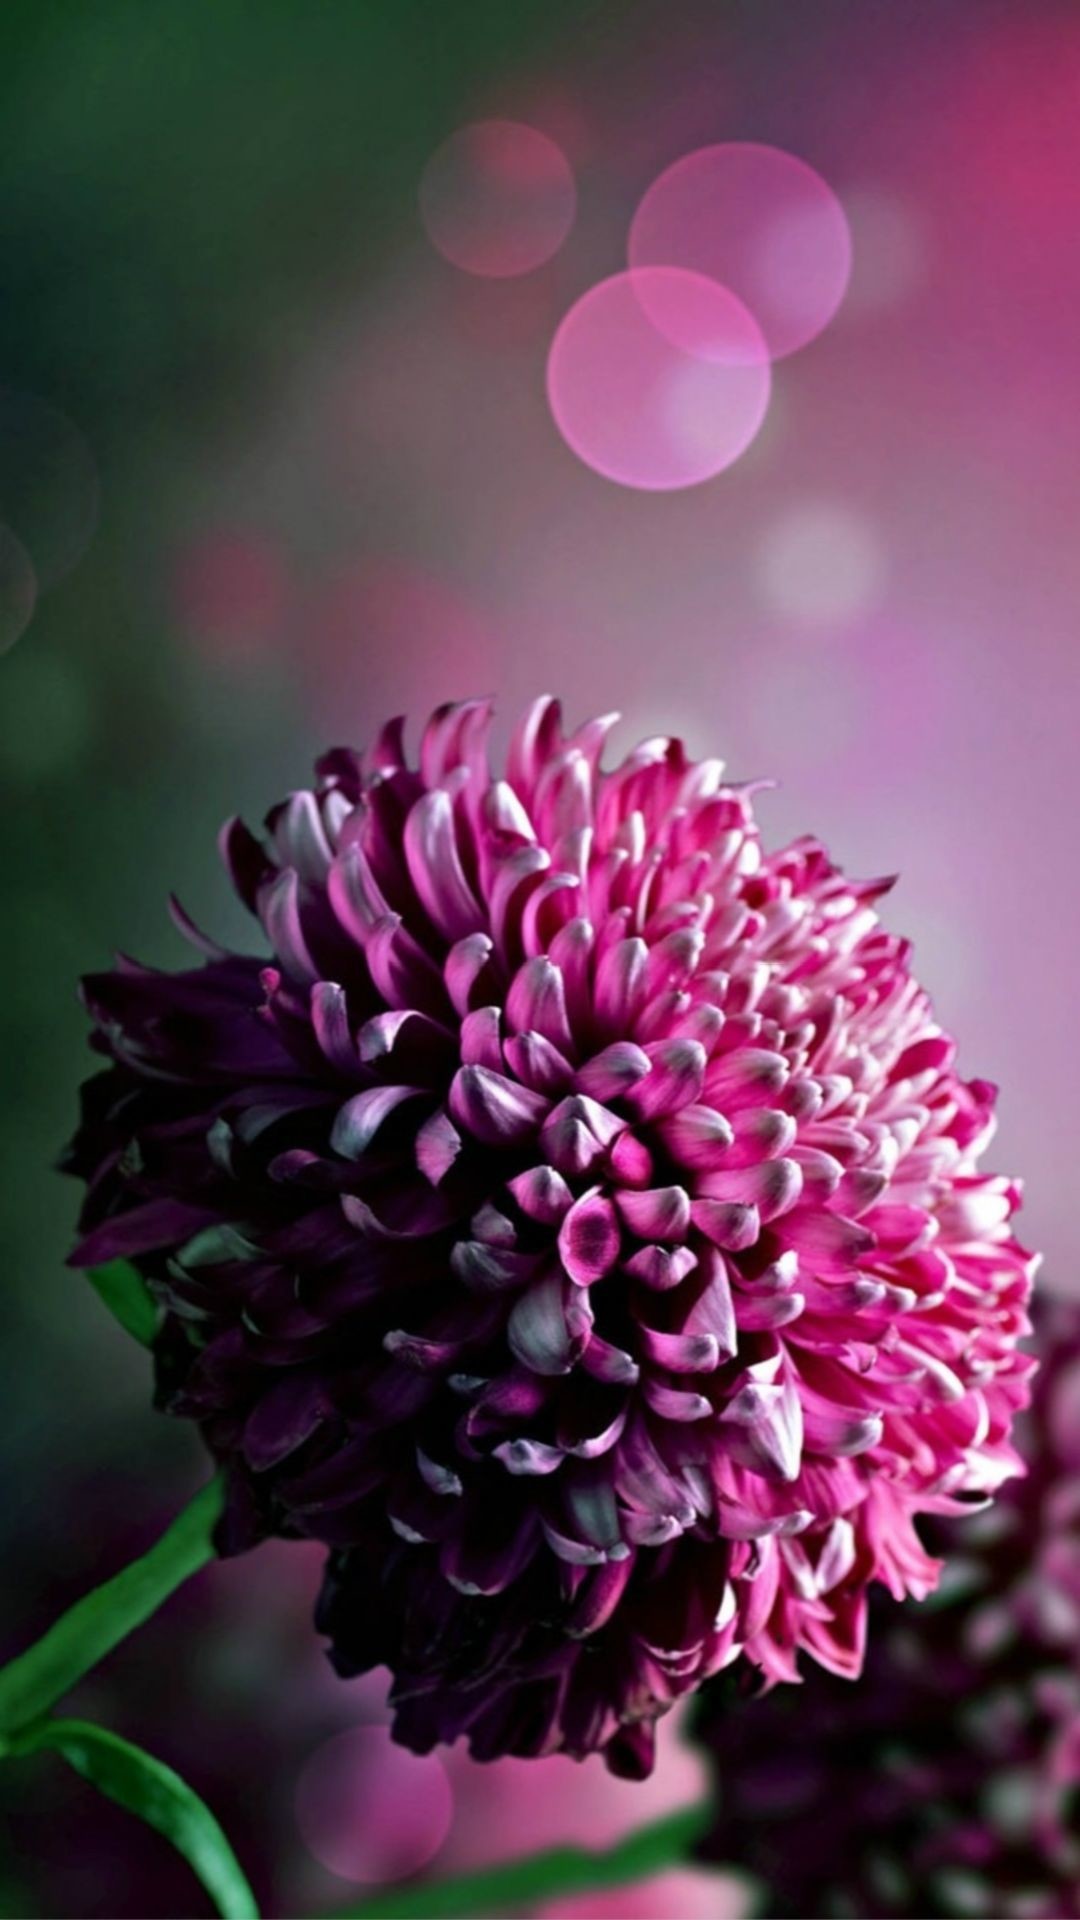 1080x1920 iphone 6 Plus Purple Flower Wallpaper, Purple Flower